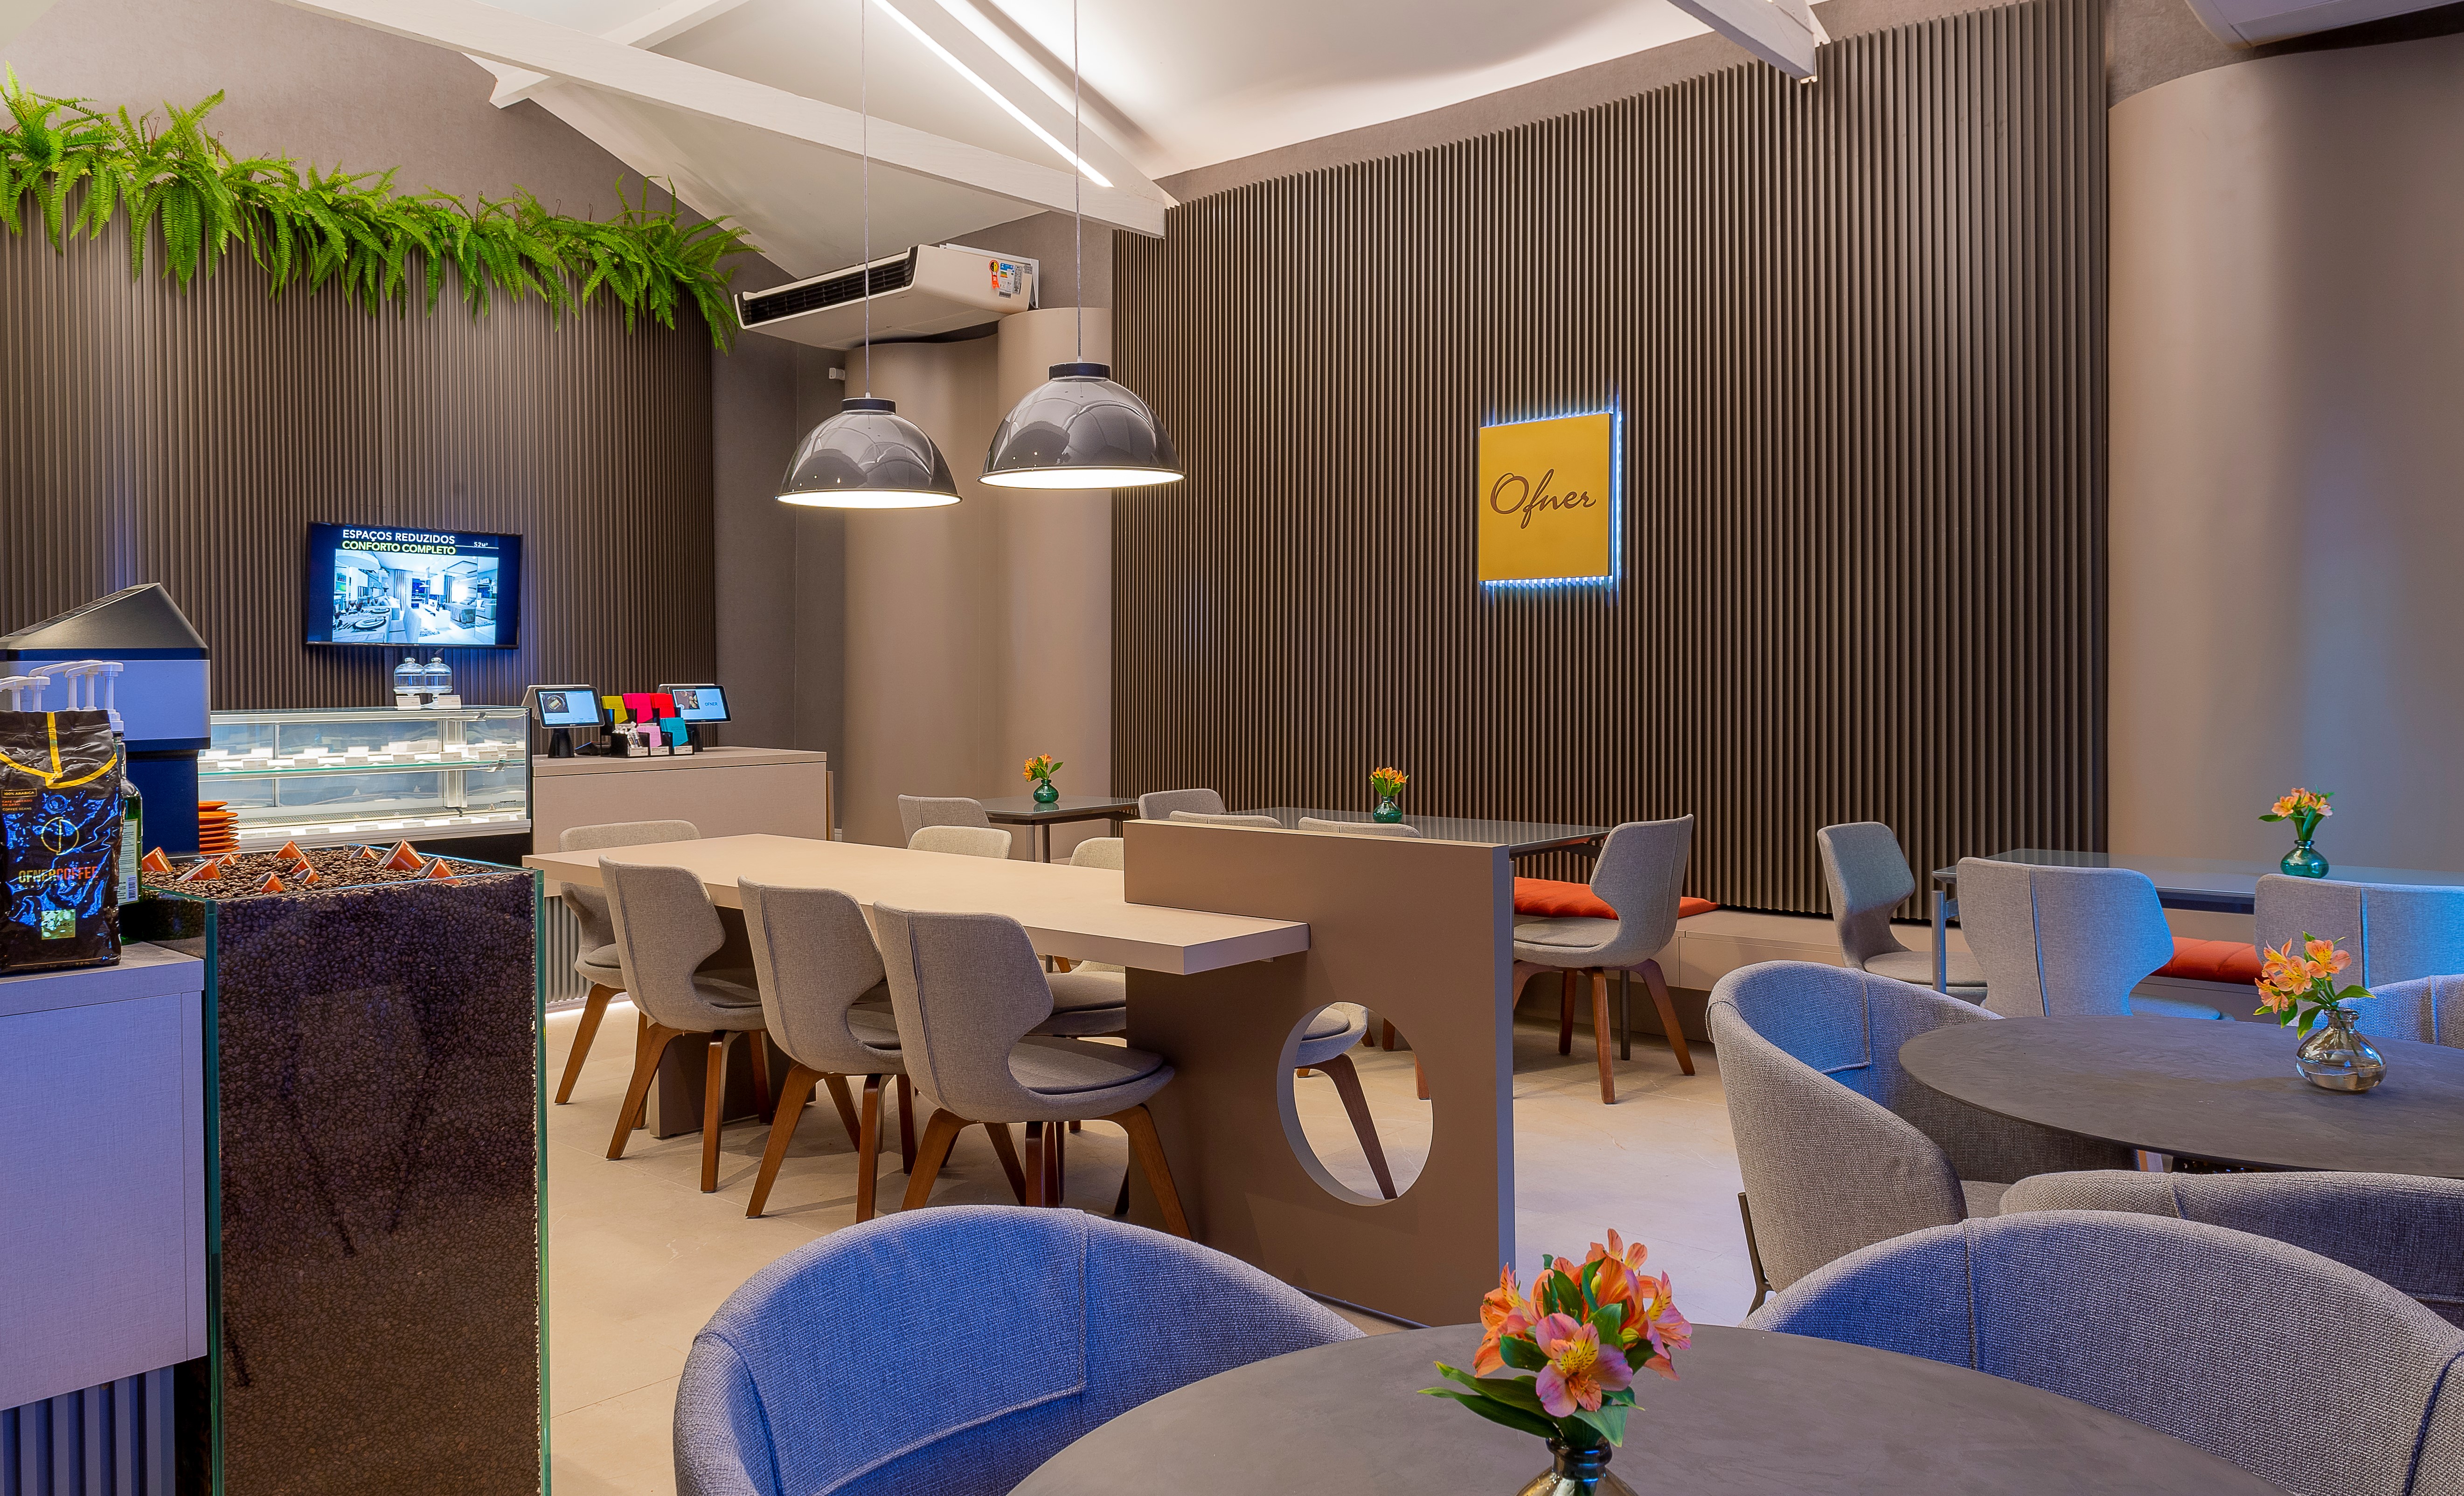 Casa Cor 2019: Um Momento Para o Café. Designer Jóia Bergamo Assina Espaço da Ofner Living da cafeteria com mesas coletivas, espaço com tons de cinza e iluminação azul.